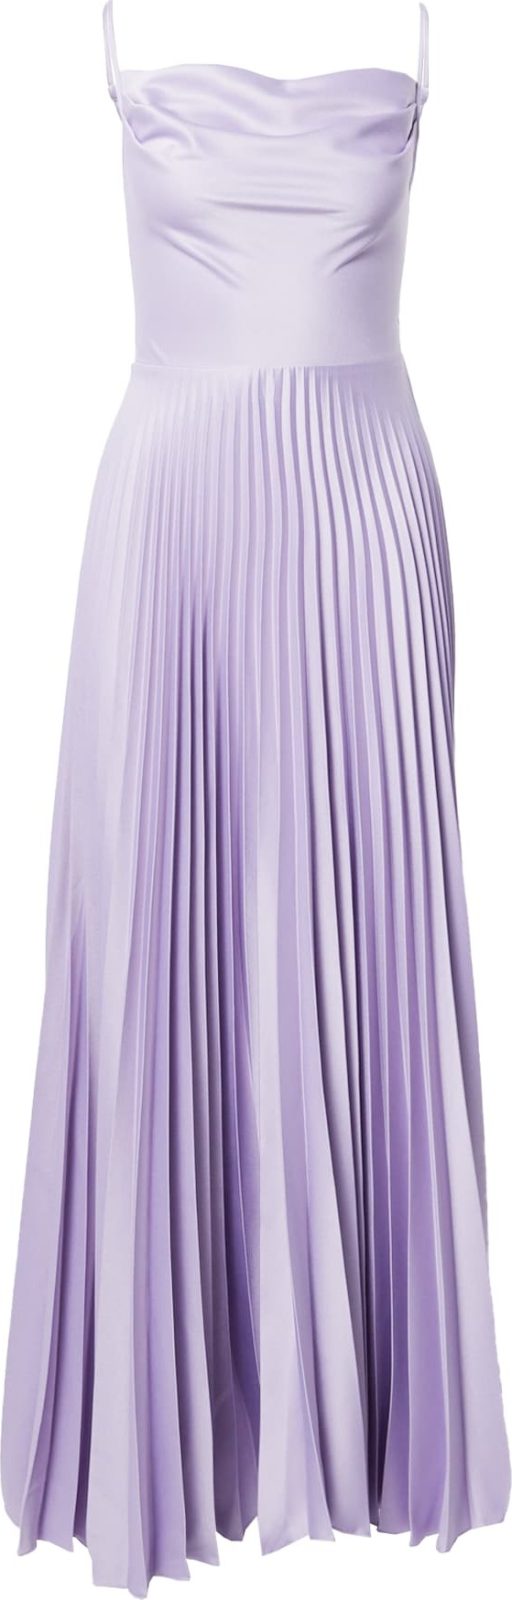 Closet London Společenské šaty světle fialová